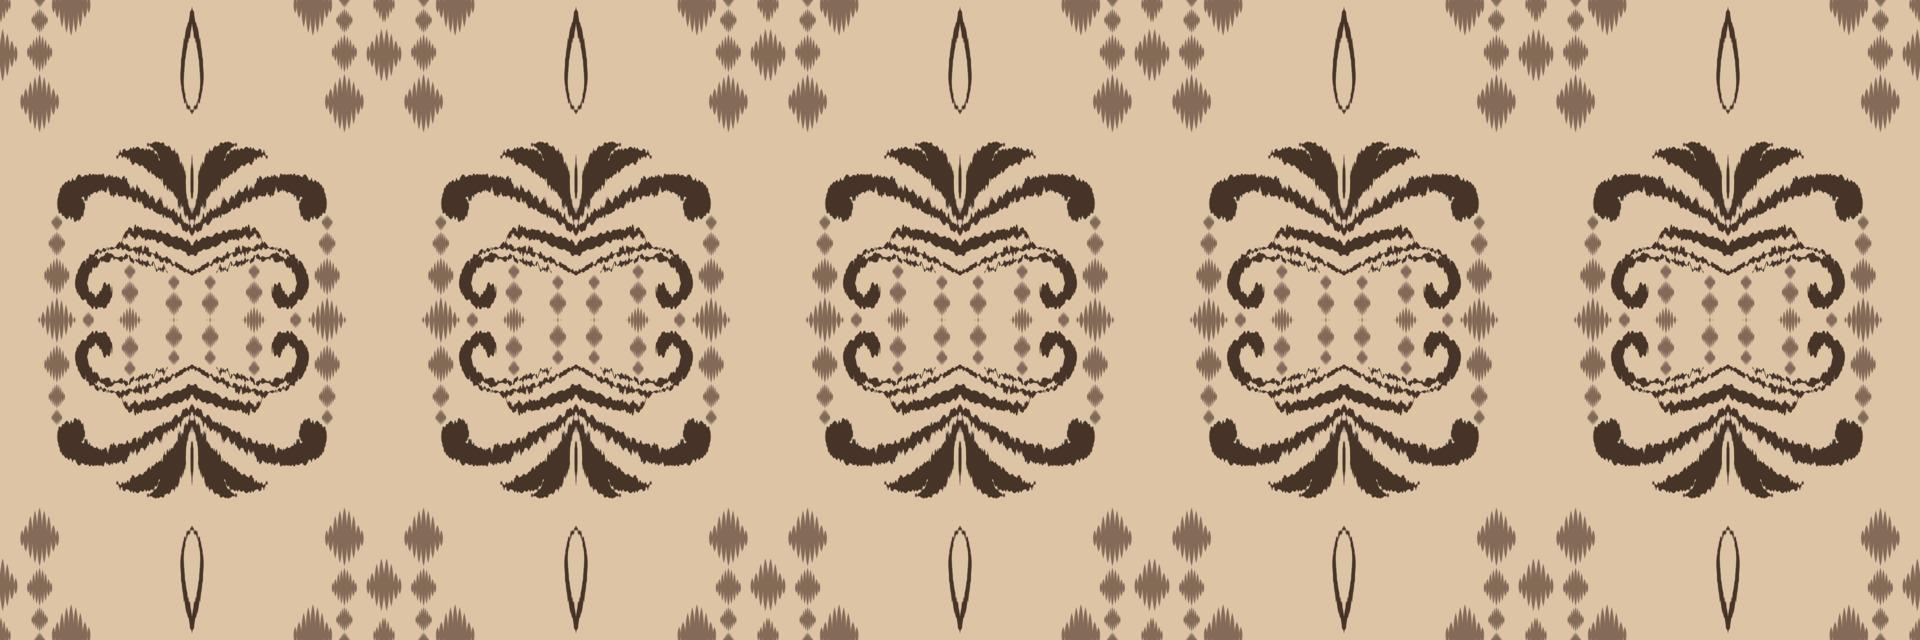 ikkat o ikat diseños batik textil patrón sin costuras diseño de vector digital para imprimir saree kurti borneo borde de tela símbolos de pincel muestras ropa de fiesta